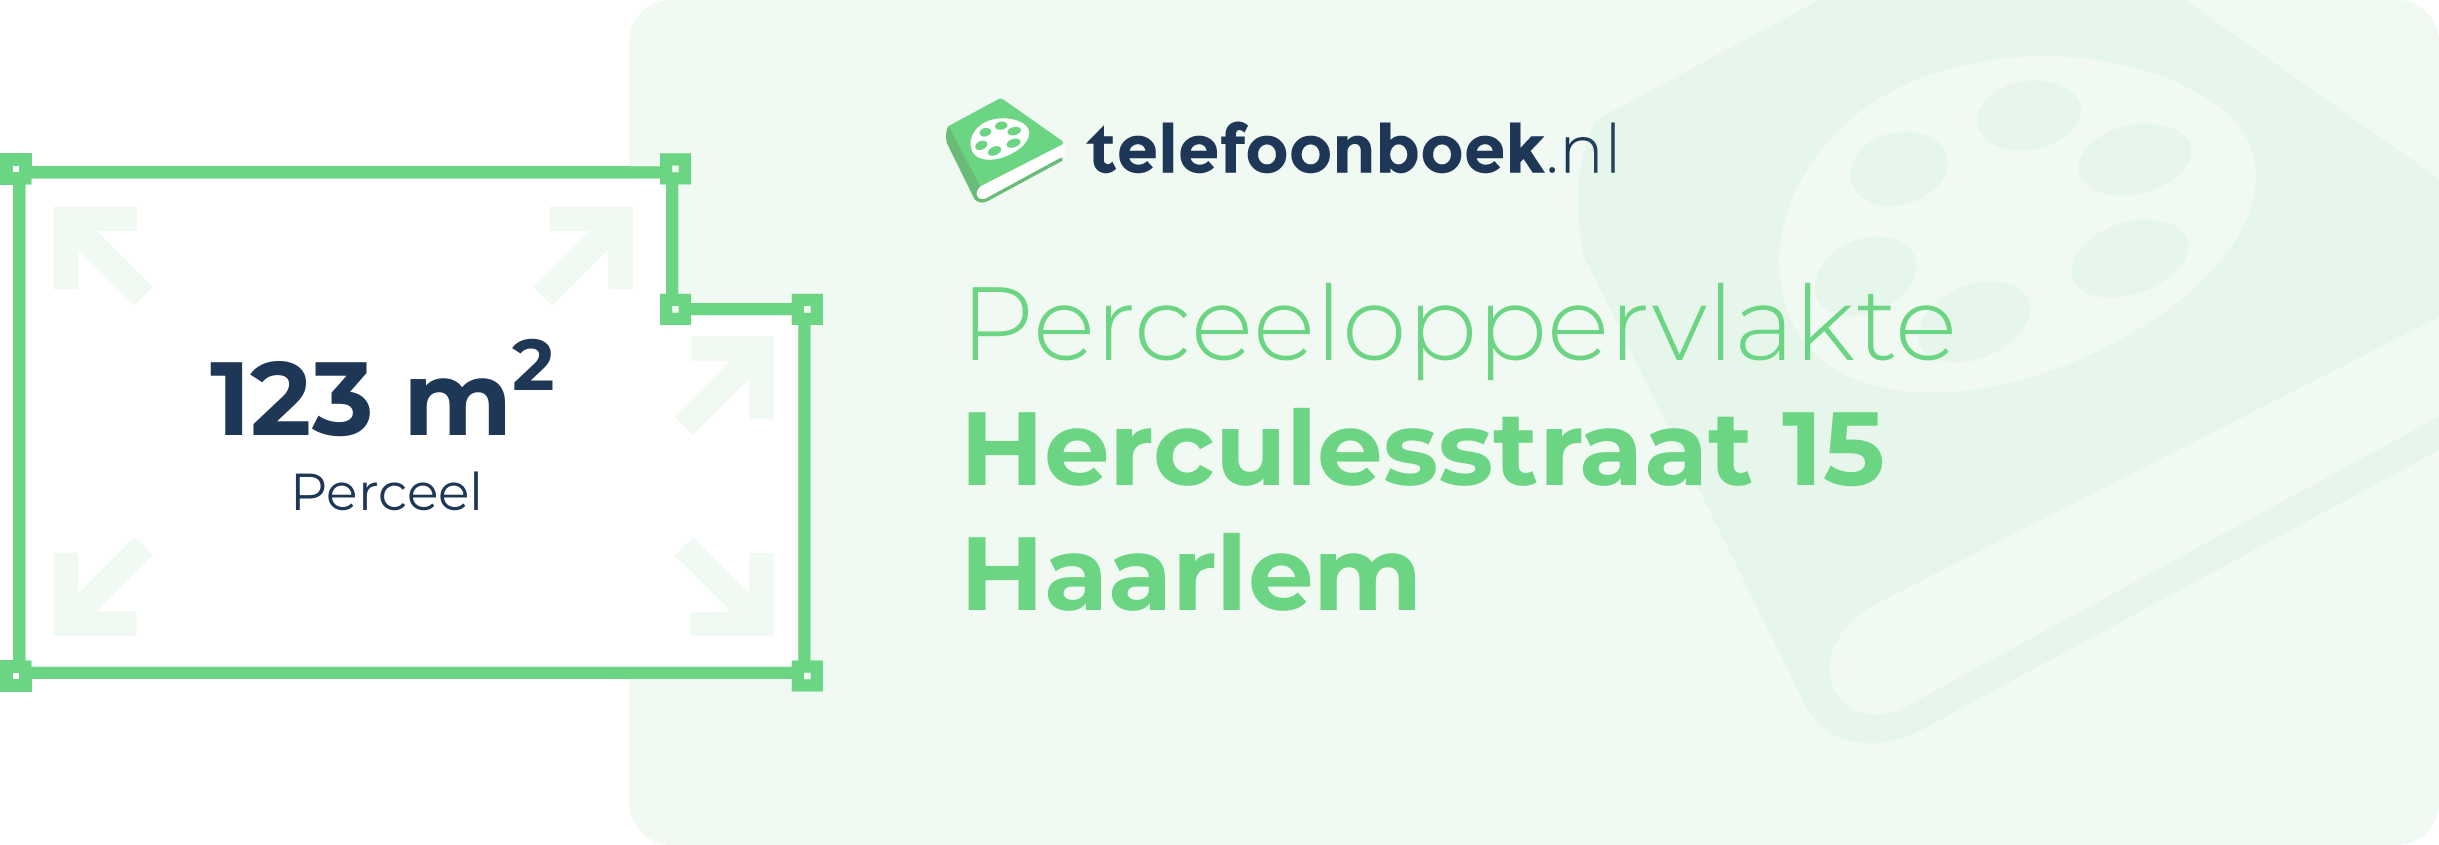 Perceeloppervlakte Herculesstraat 15 Haarlem